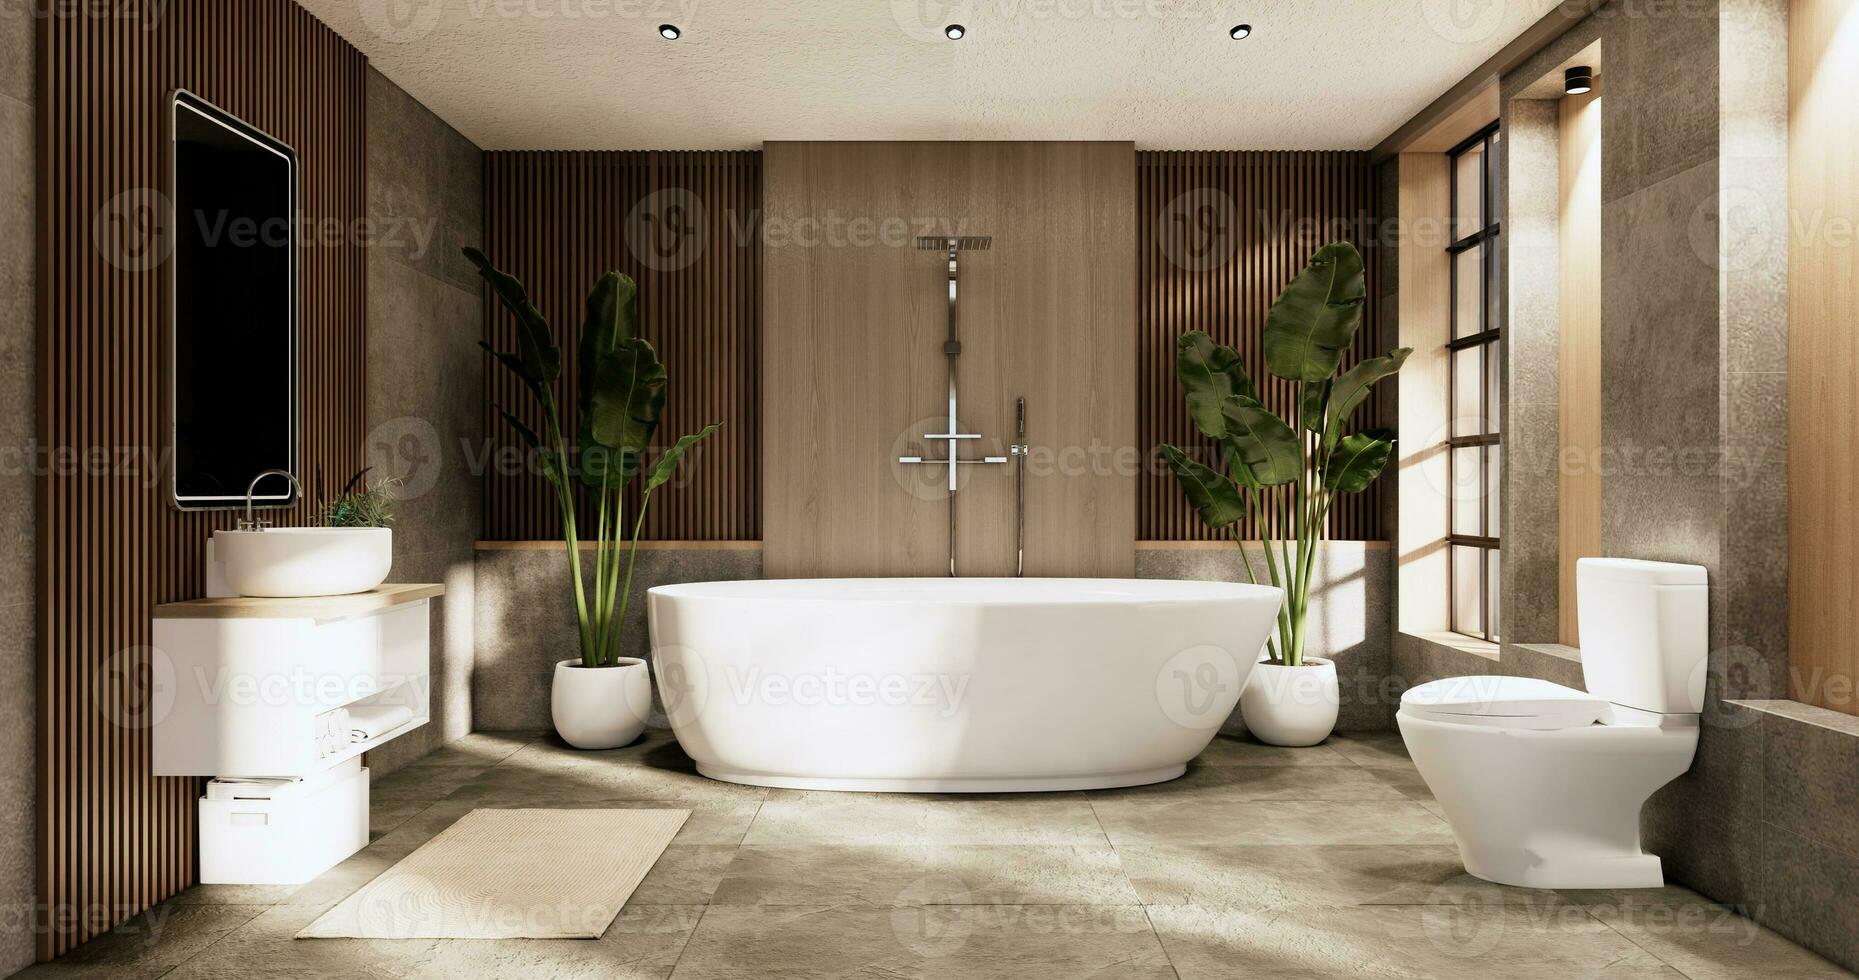 a banho e banheiro em banheiro japonês wabi sabi estilo .3d Renderização foto